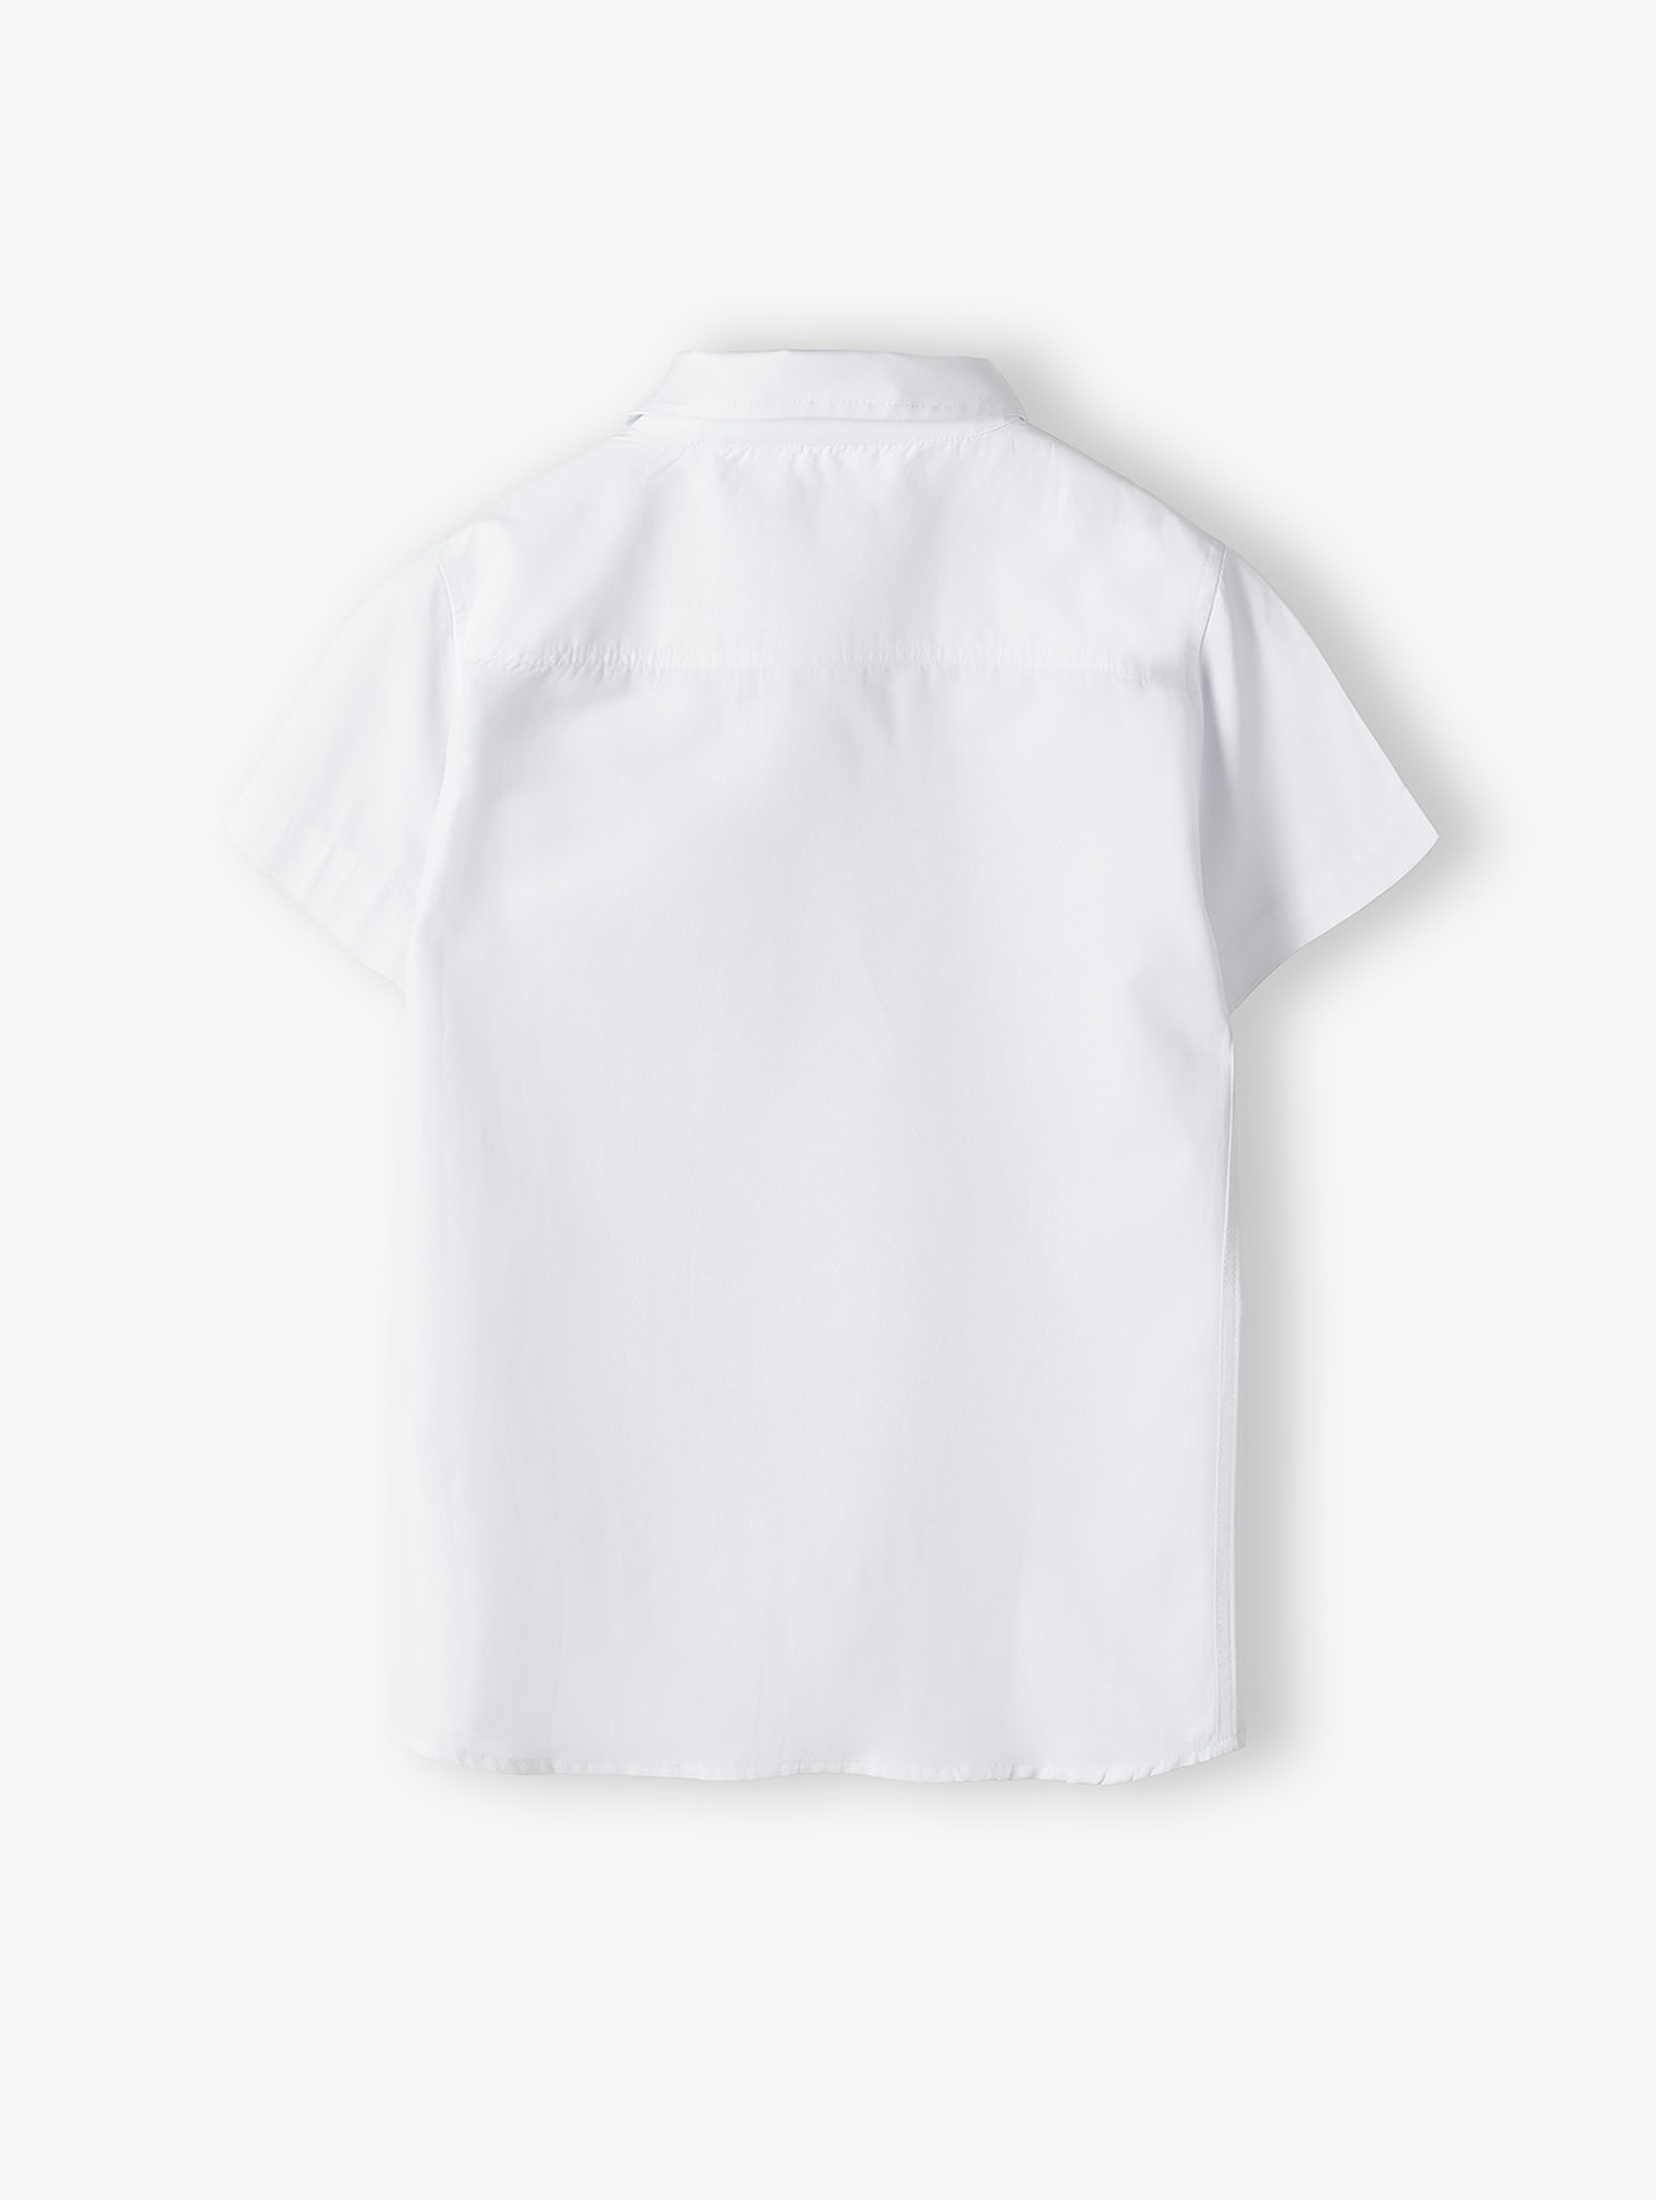 Elegancka biała koszula chłopięca z krótkim rękawem